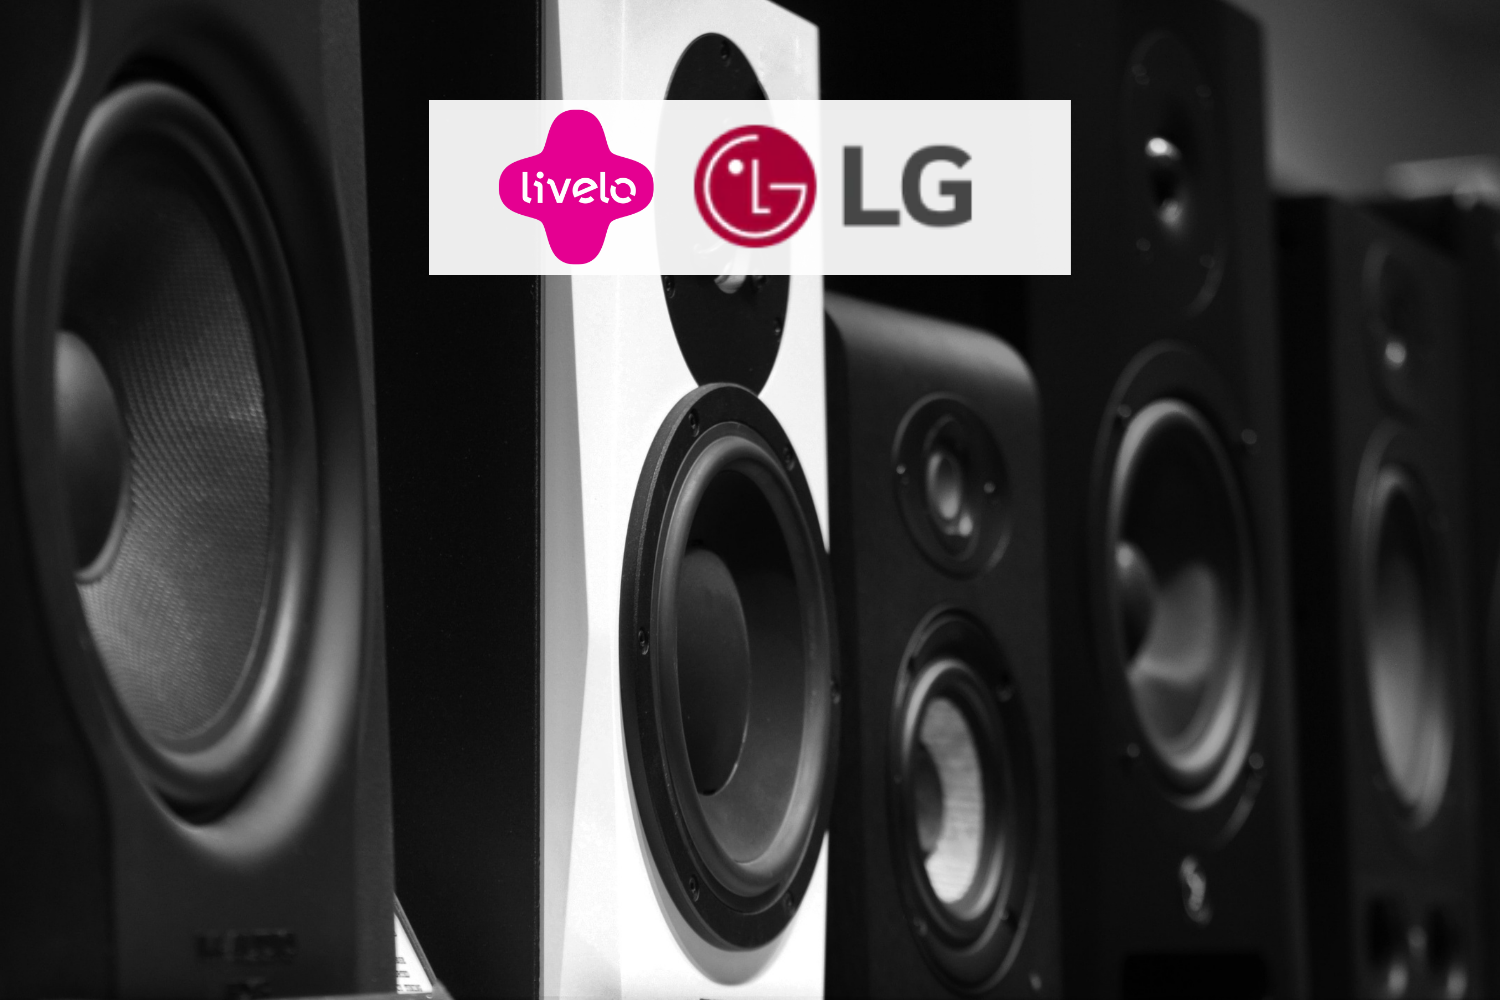 Caixa de som nas cores preto e branco com logo LG e Livelo